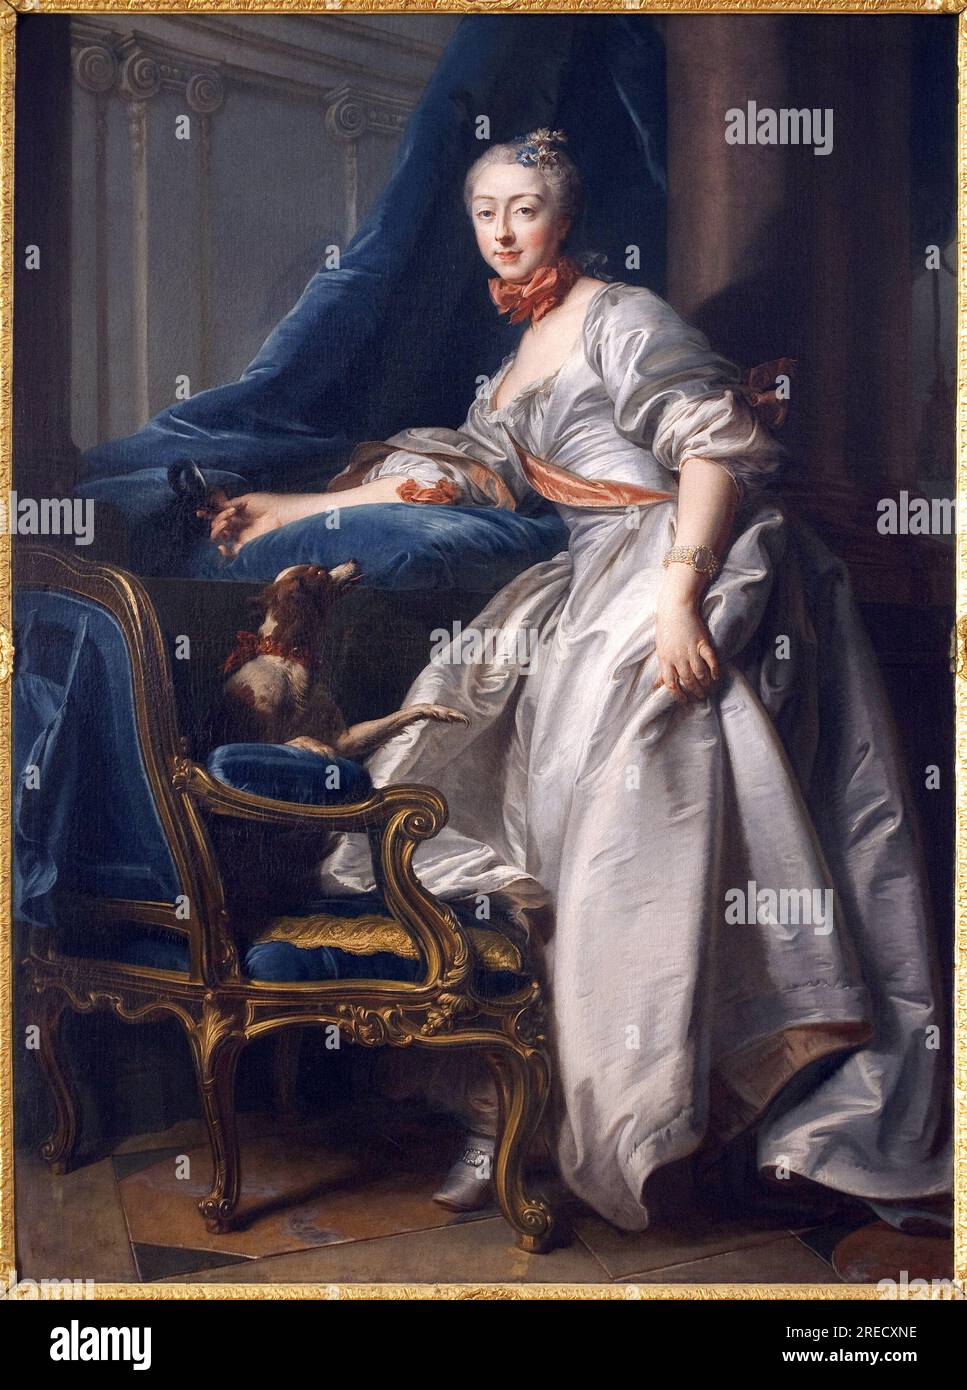 Portrait de Marie Anne de Montboisier Beaufort Canillac, marquise de Caumont. Peinture de Jean Valade (1709-1787), huile sur toile, 1756. Art francais 18e siecle. Musee des Beaux arts de Avignon. Stock Photo